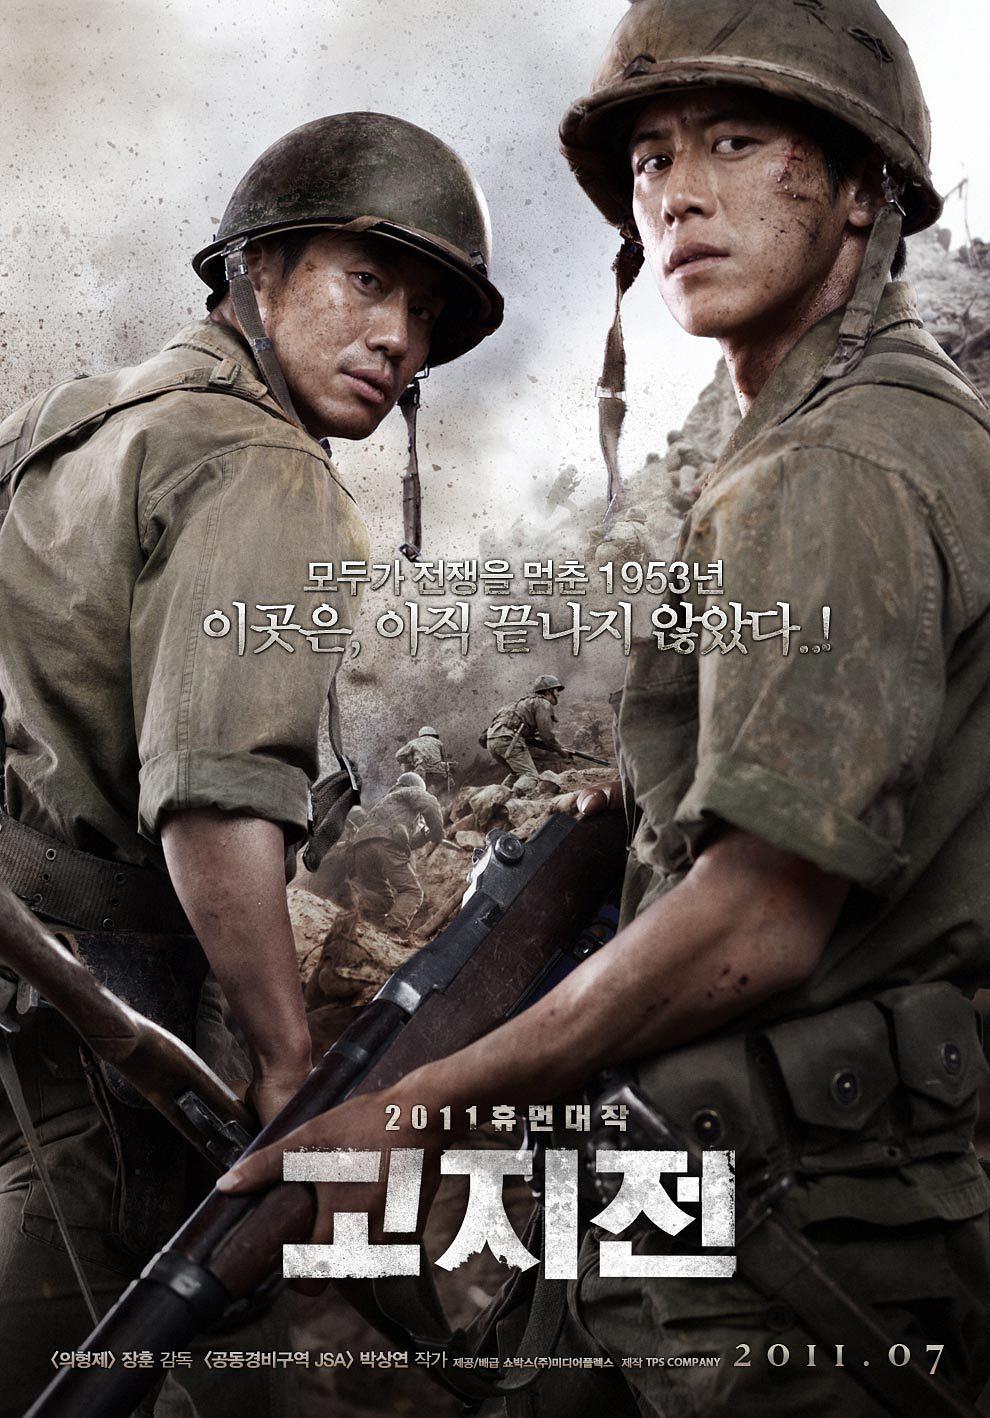 高地战 The.Front.Line.2011.KOREAN.1080p.BluRay.x264.DTS-FGT 12.11GB-1.png